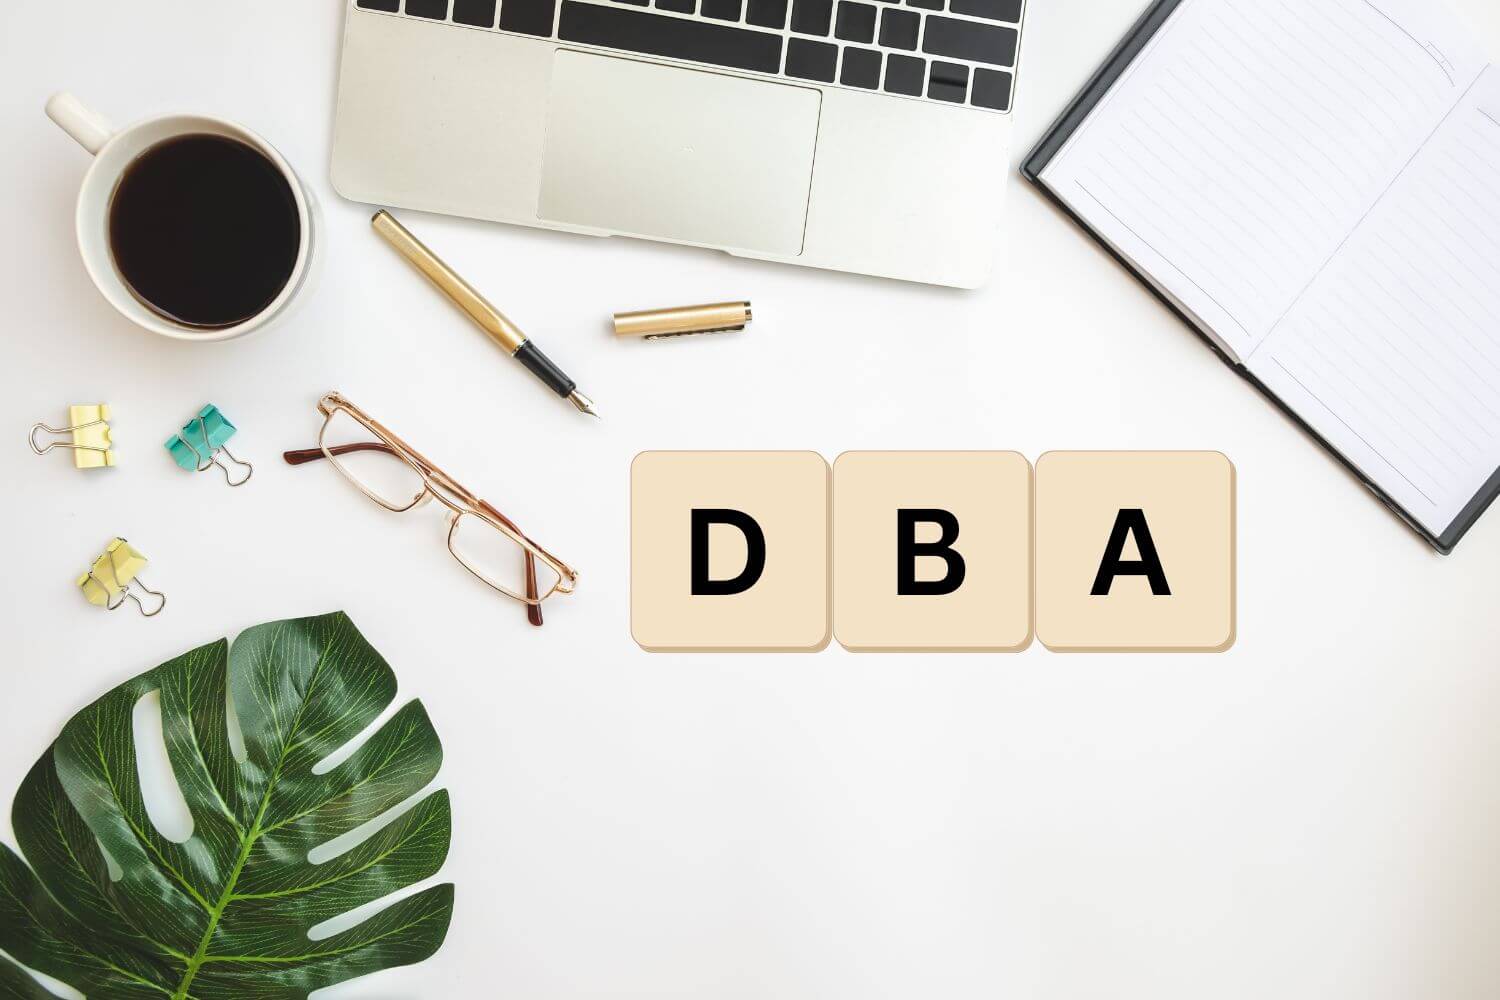 Scrabble tiles spelling "DBA" on an office desk